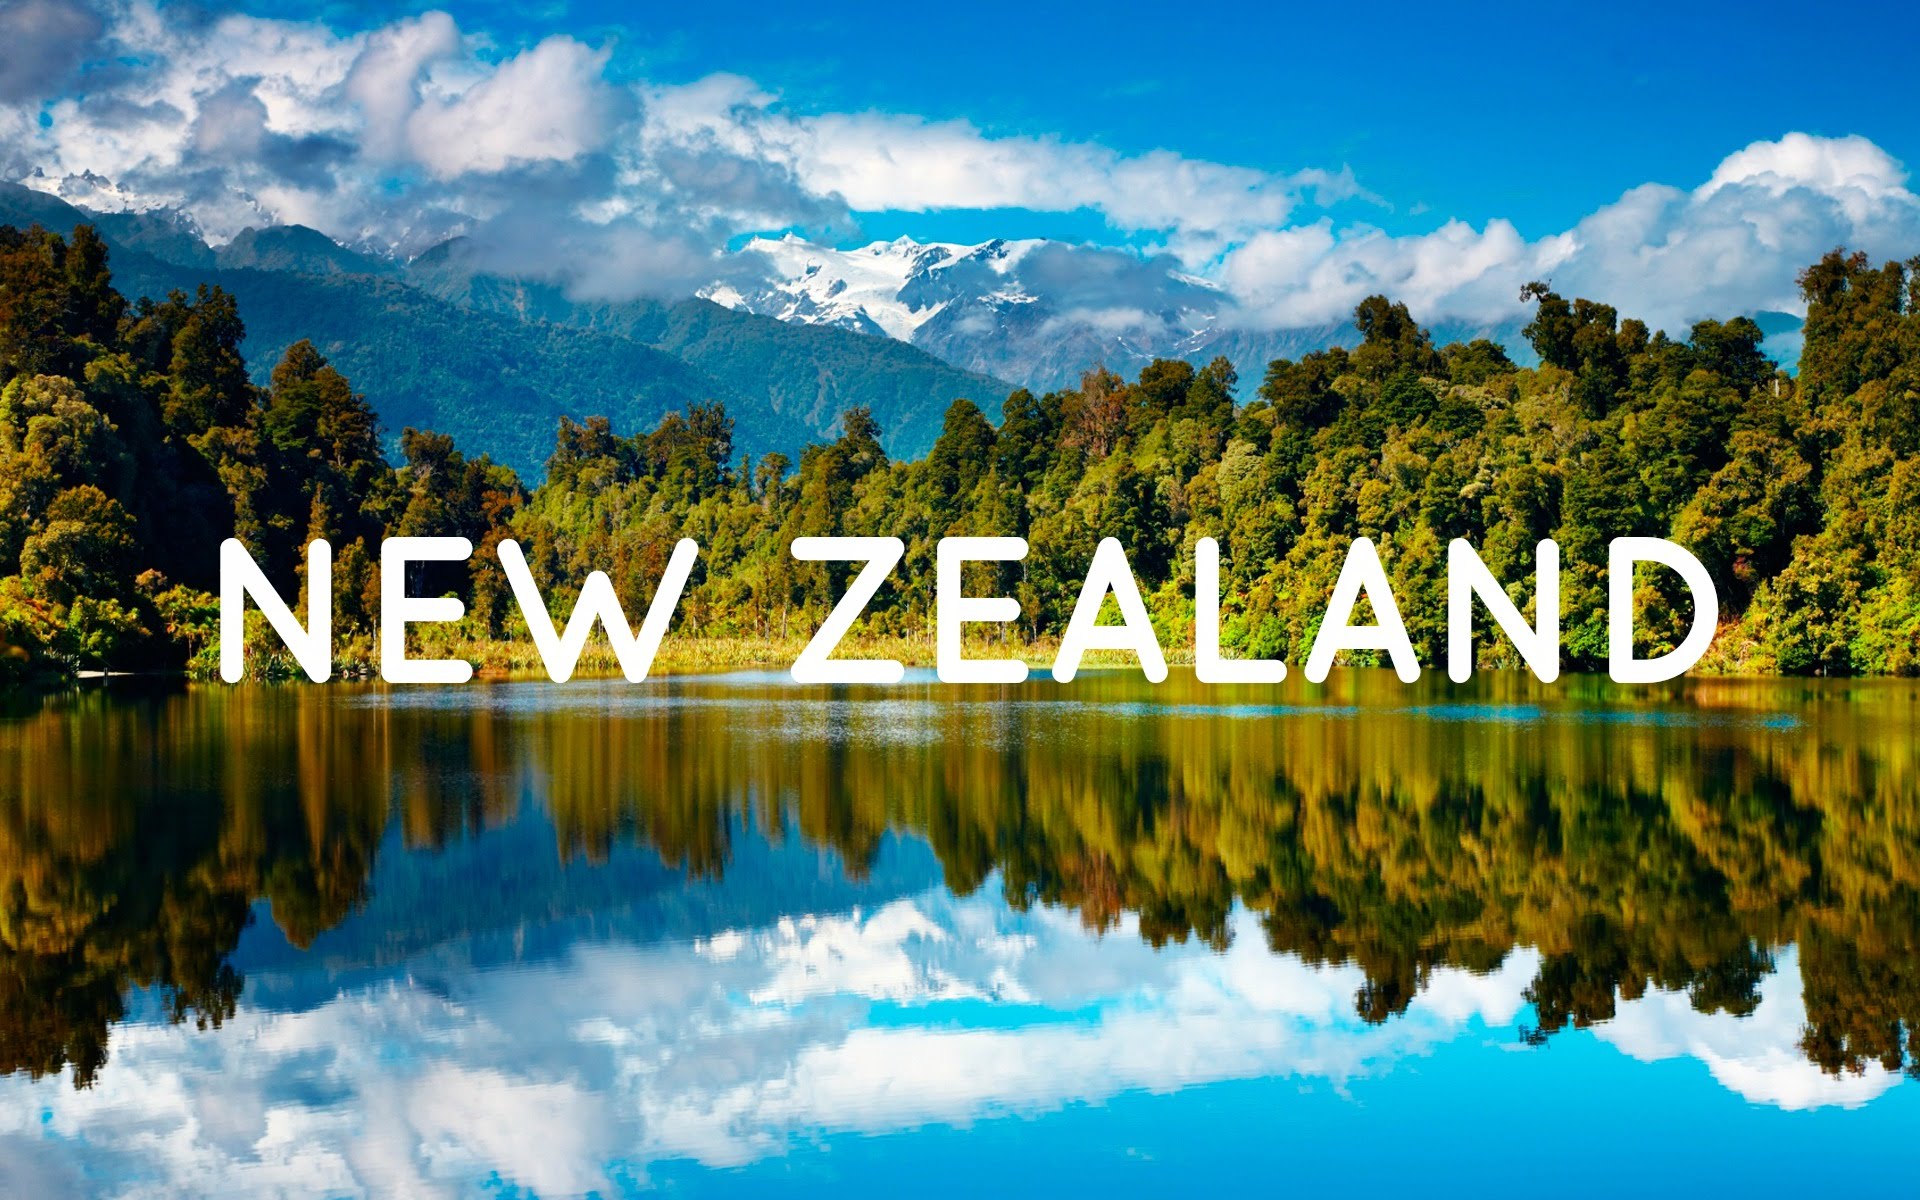 Dịch Vụ Làm Hộ Chiếu Visa đi New Zealand Dịch Vụ Visa Hộ Chiếu Chuyên Nghiệp Tại Hà Nội Sài Gòn 3008